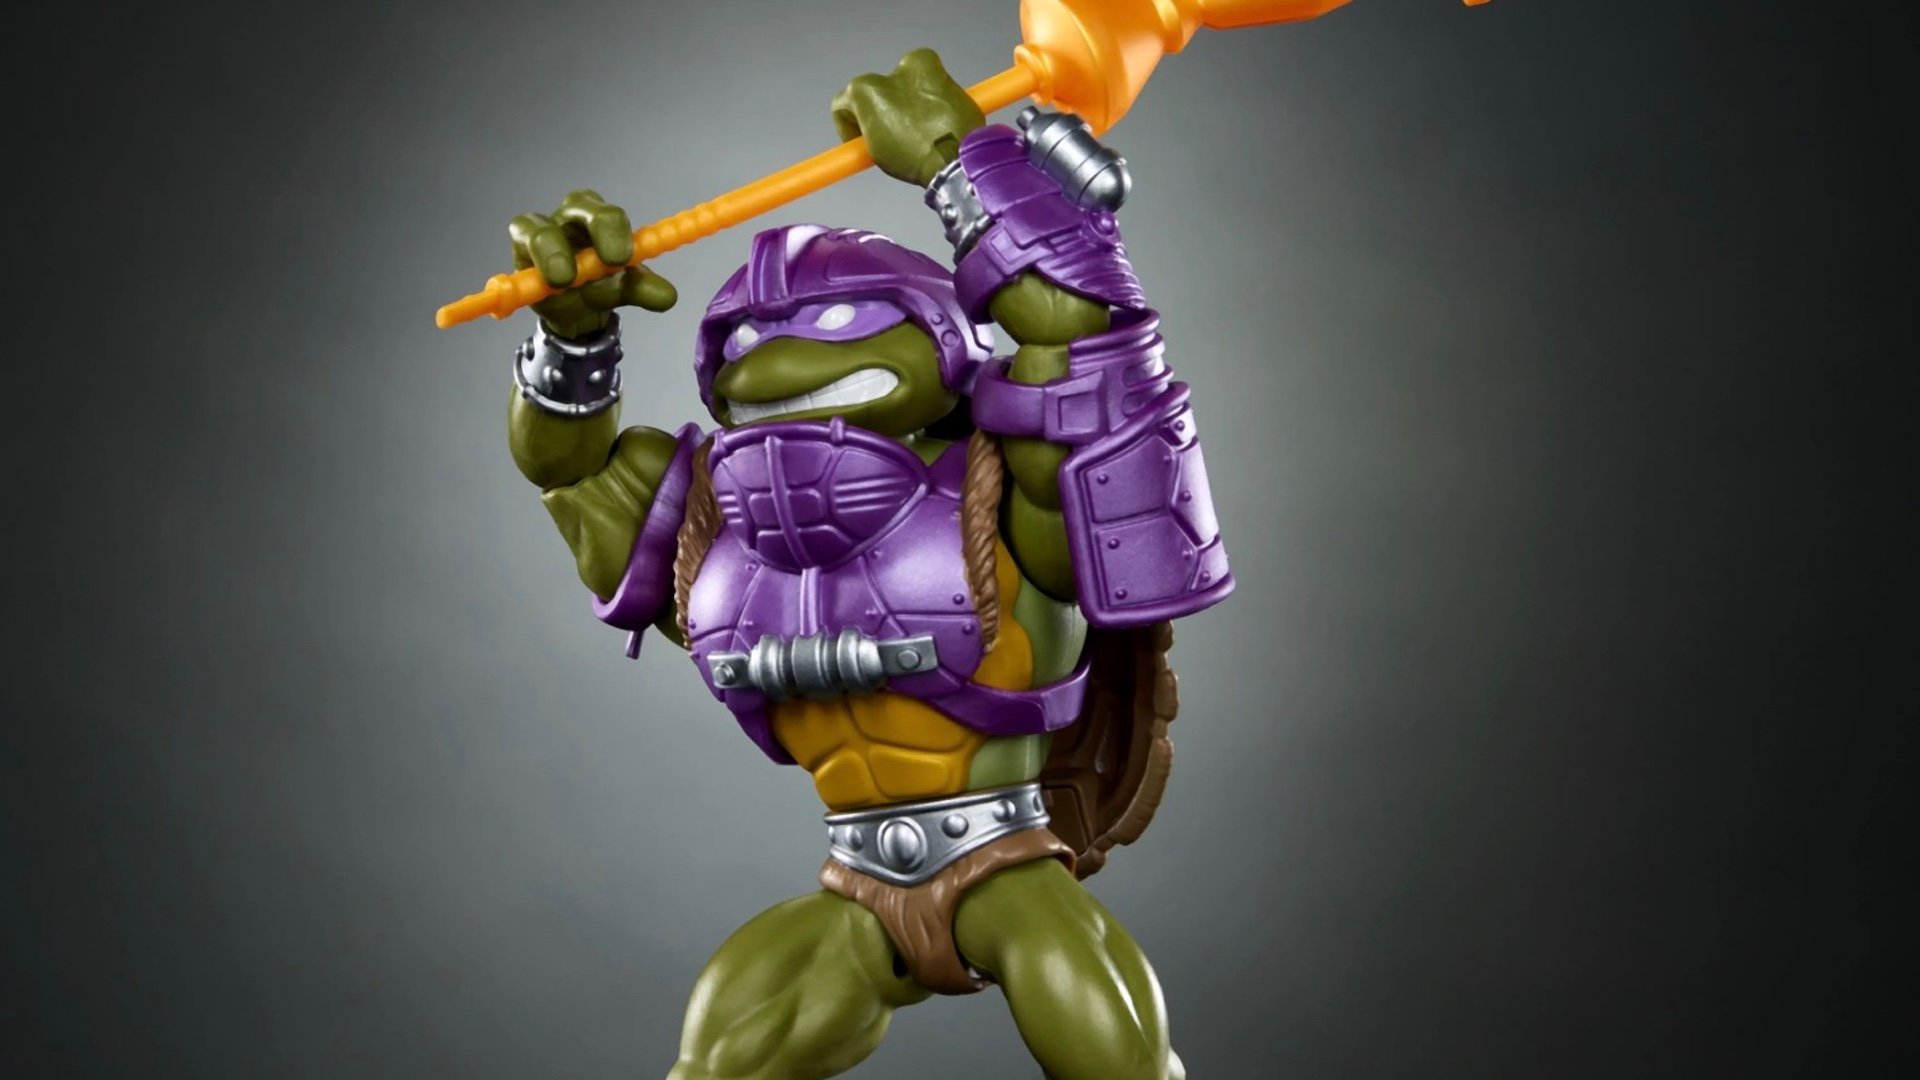 TMNT Meets He-Man in Turtles of Grayskull Toy Series - IGN